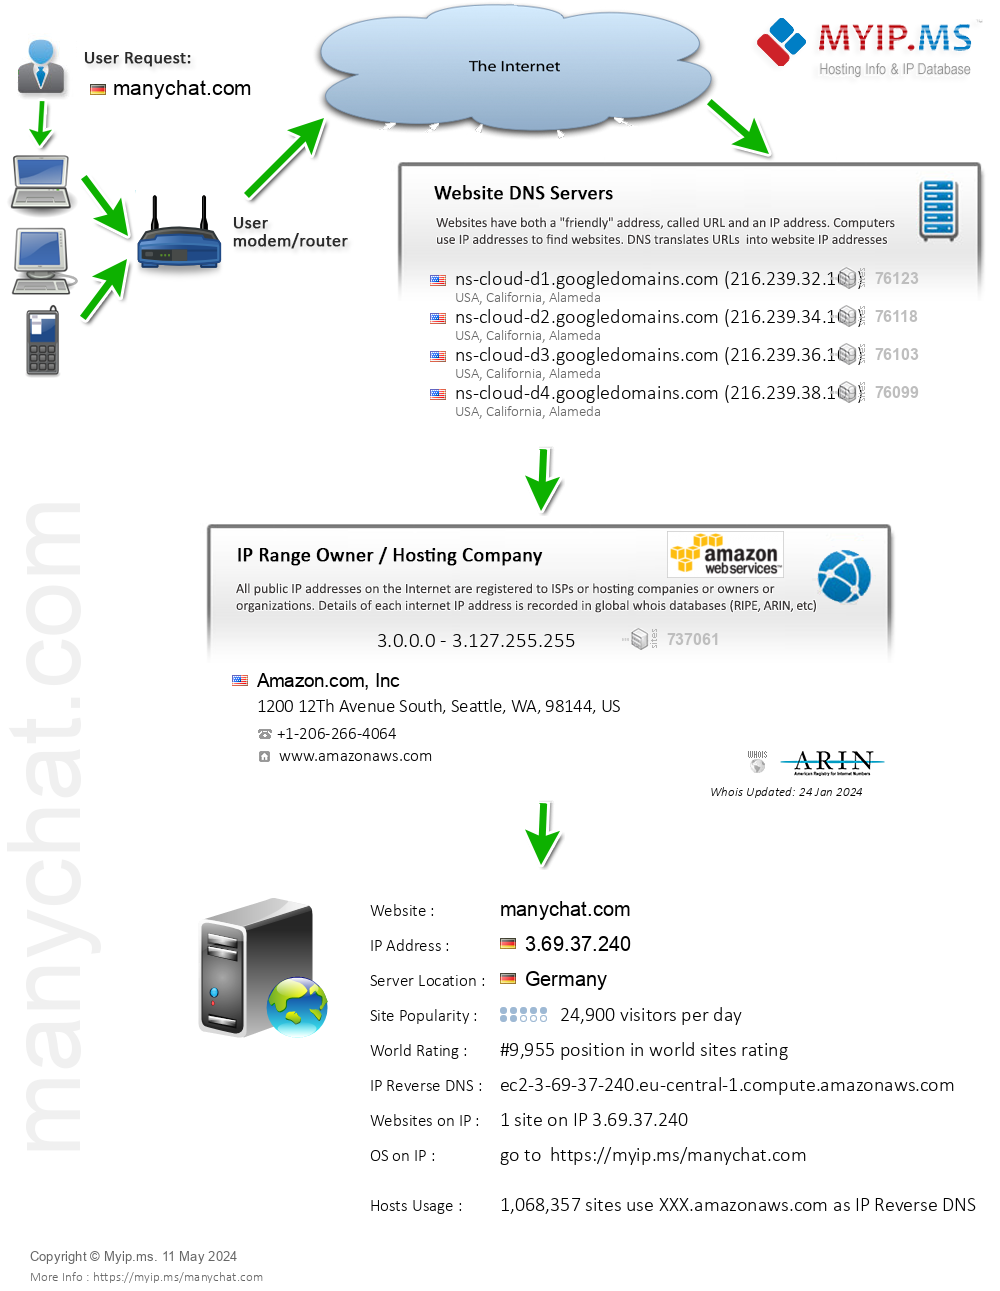 Manychat.com - Website Hosting Visual IP Diagram